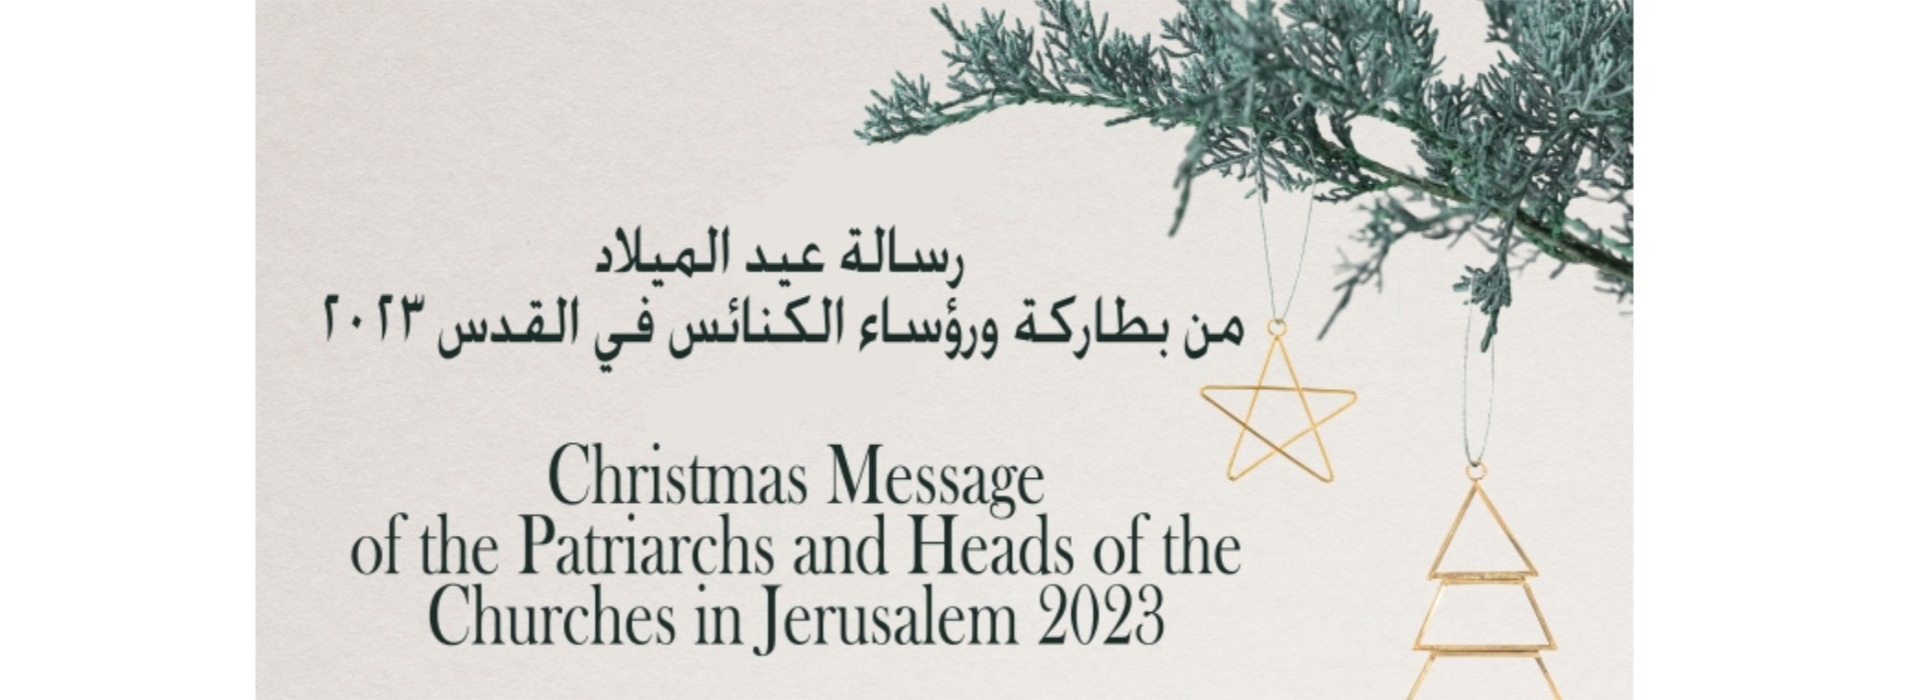 رسالة عيد الميلاد من بطاركة ورؤساء الكنائس في القدس ٢٠٢٣